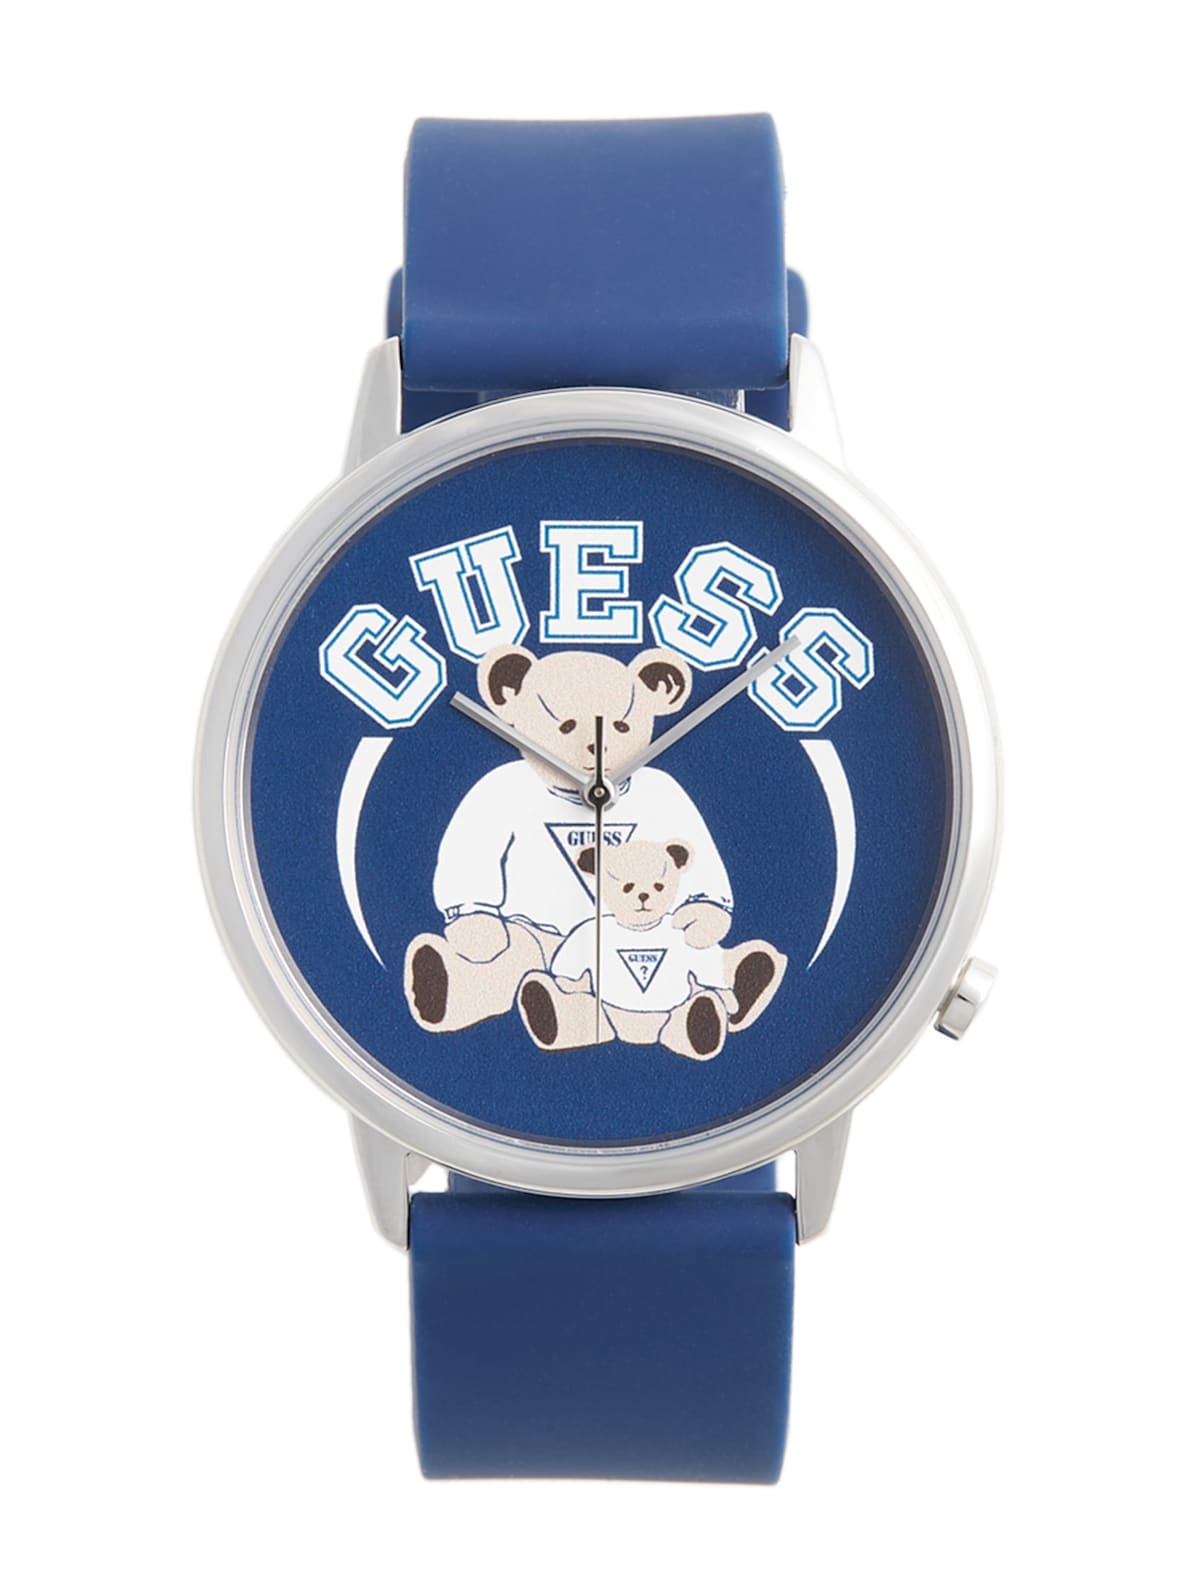 GUESS Originals Blue Bear Watch | GUESS